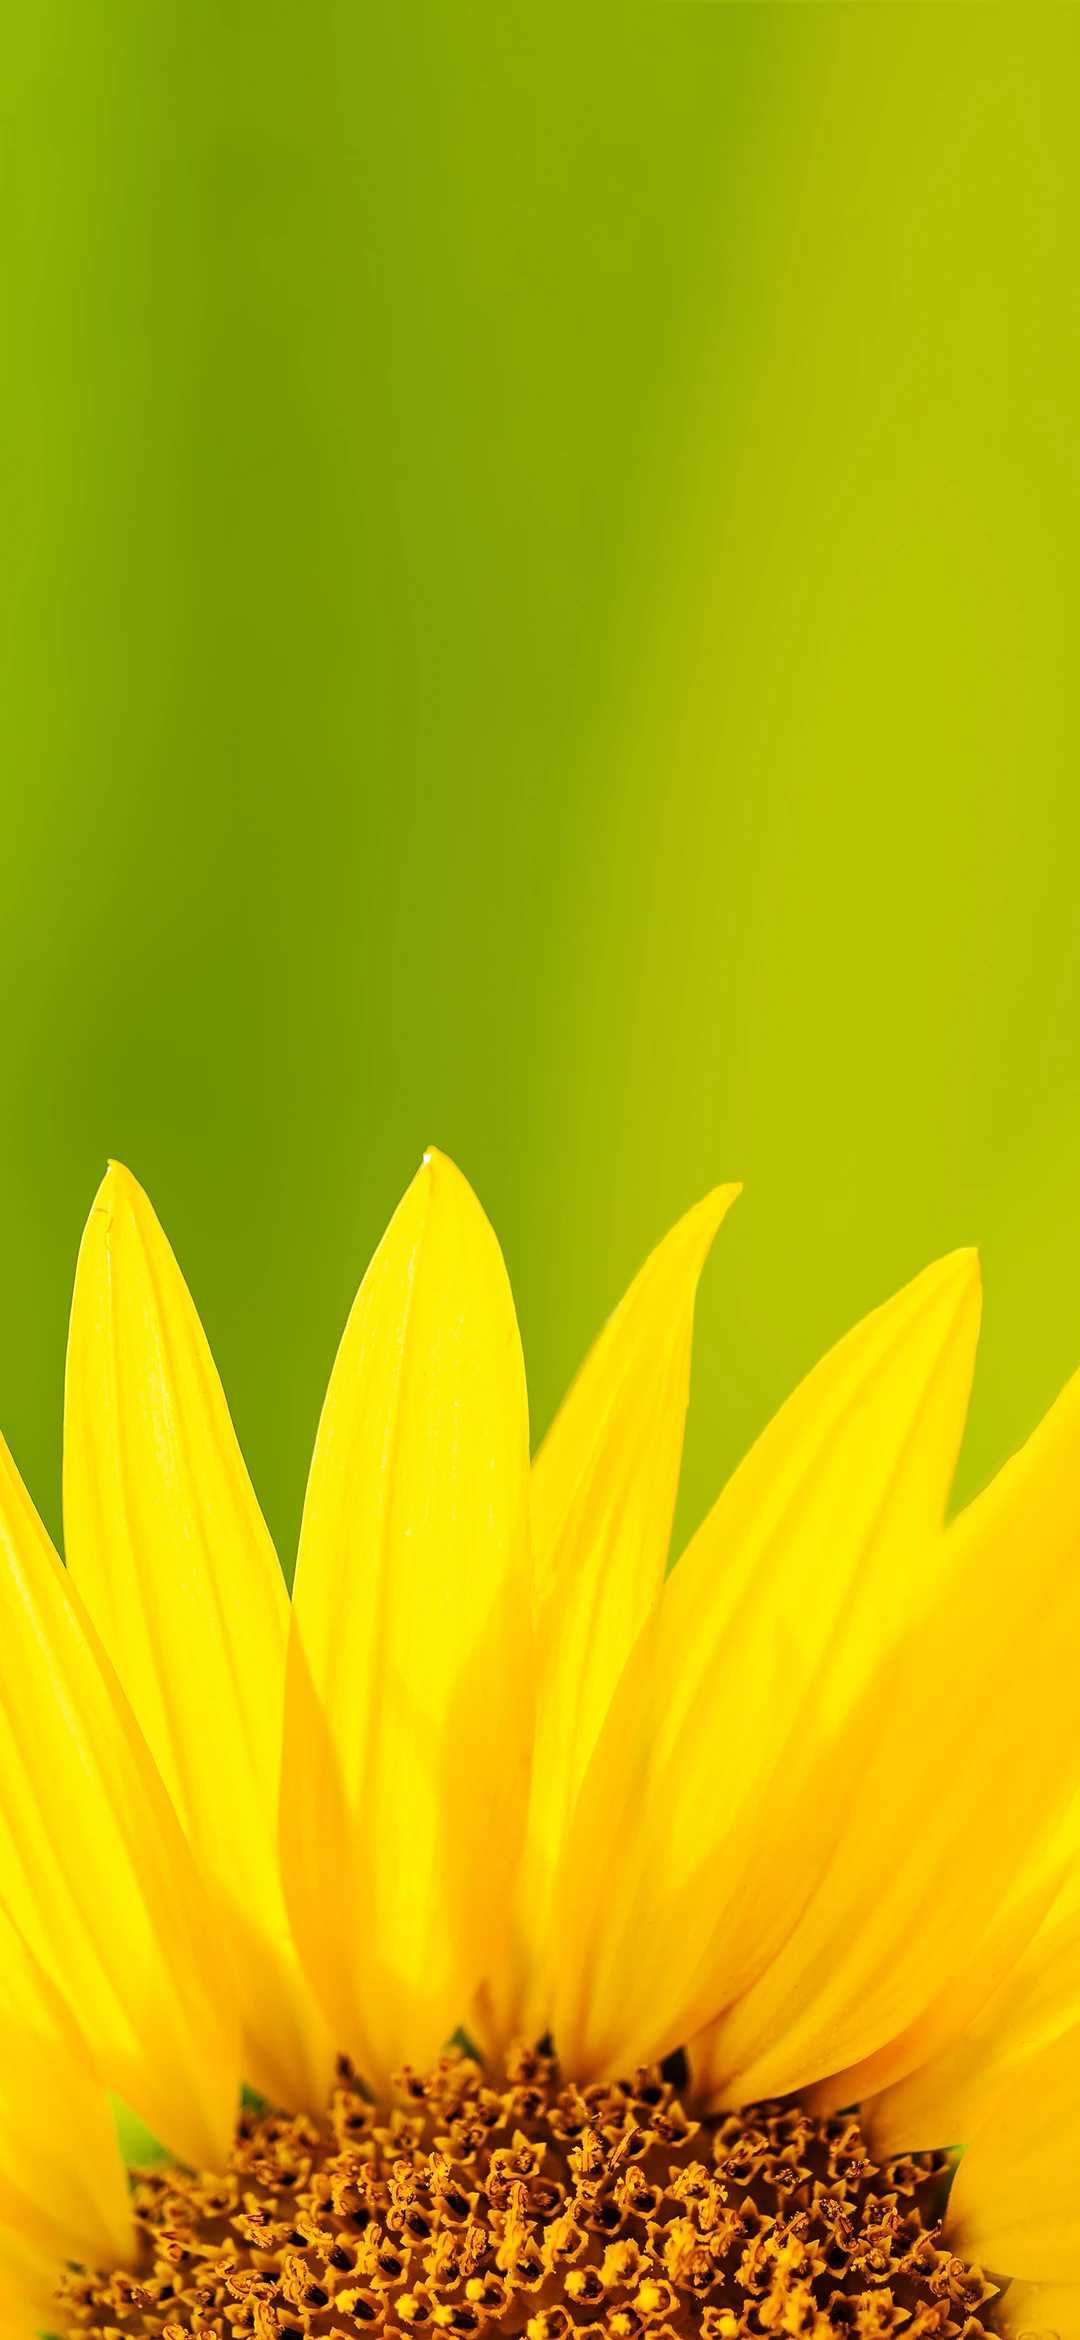 美好向日葵 自愈系创意竖屏手机壁纸 1080×1920-PixStock 源像素